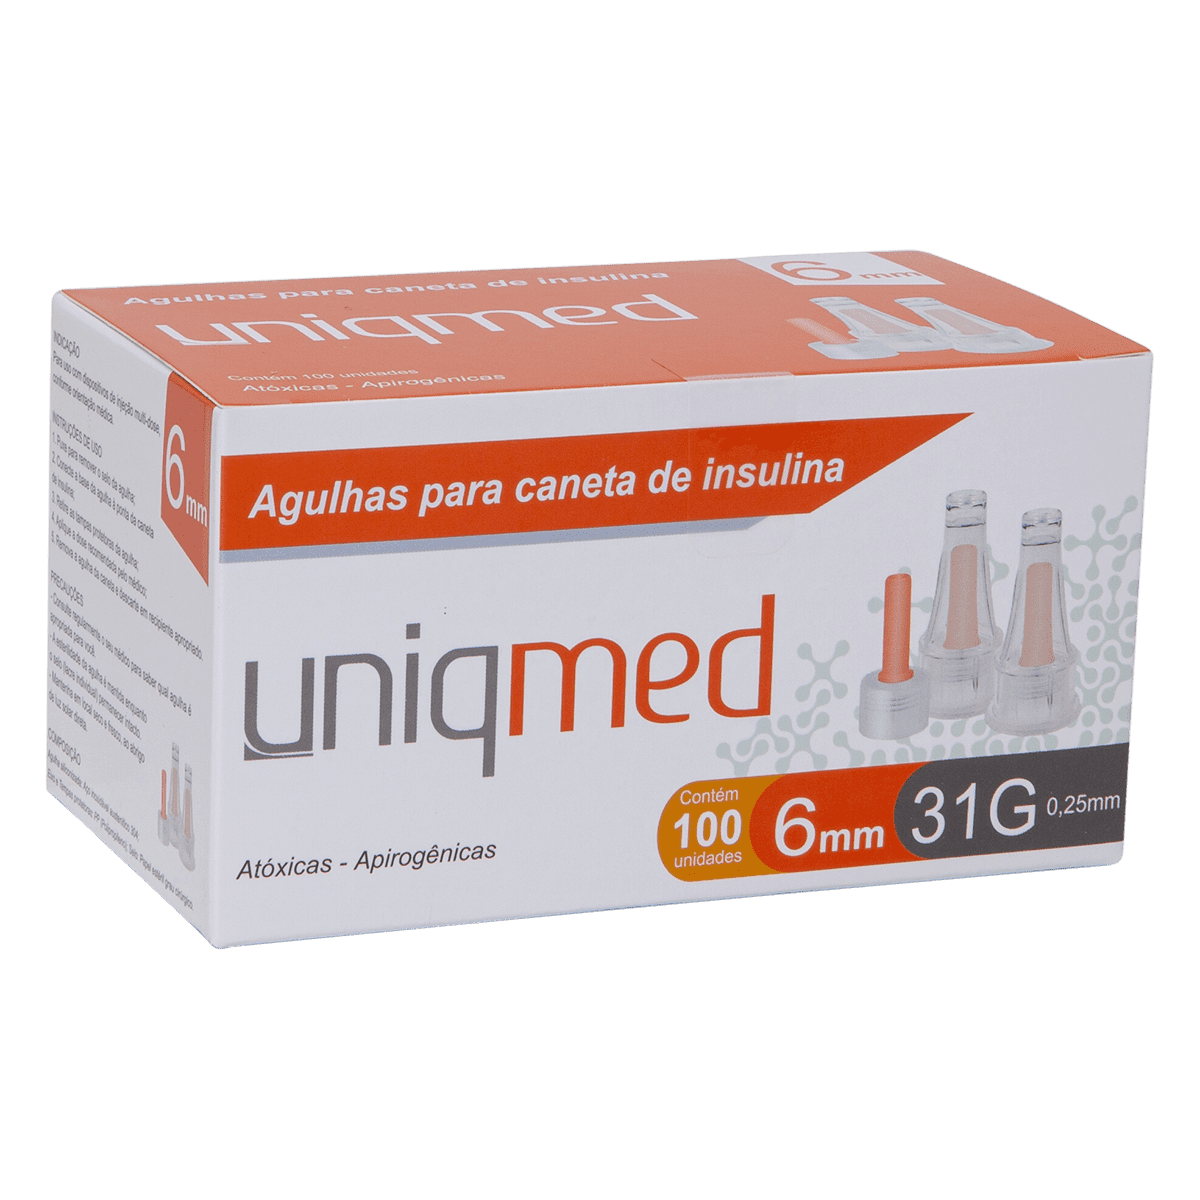 Agulhas para Caneta de Insulina Uniqmed 6mm x 31G (0.25mm) - Caixa com 100 unidades